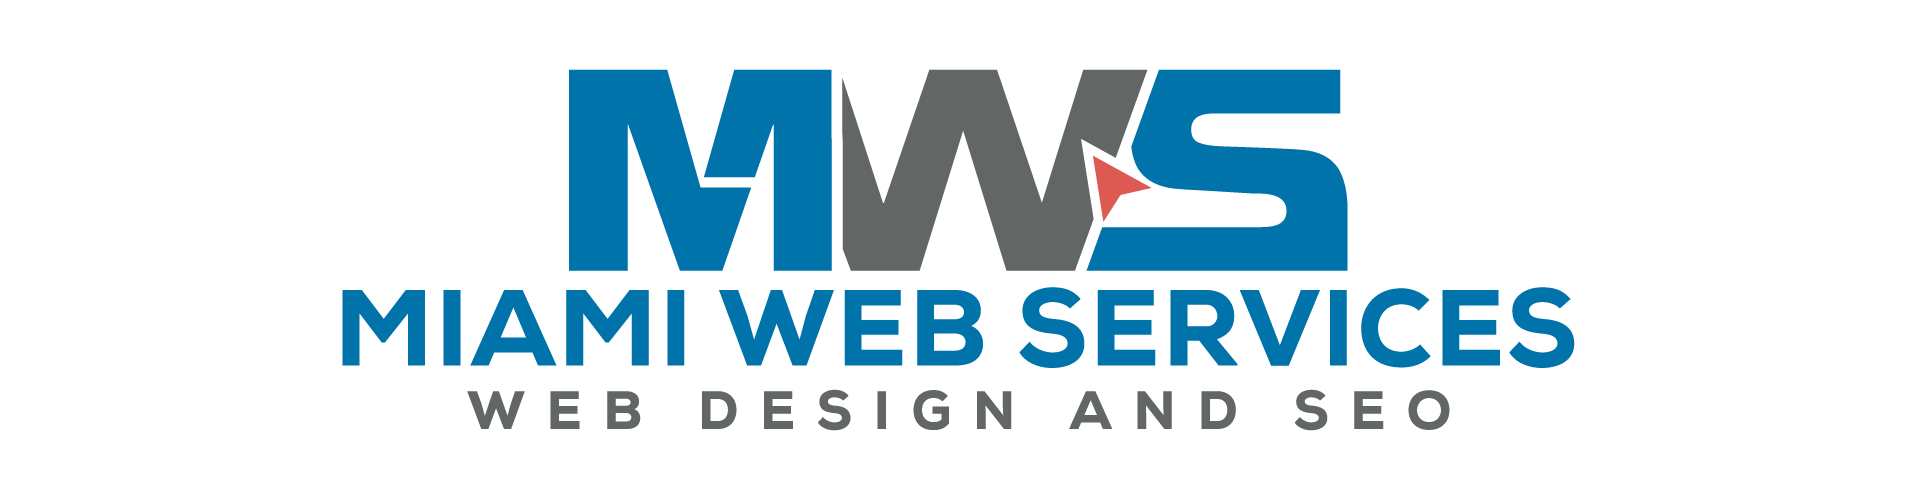 Miami Web Services – Web Design & SEO Company